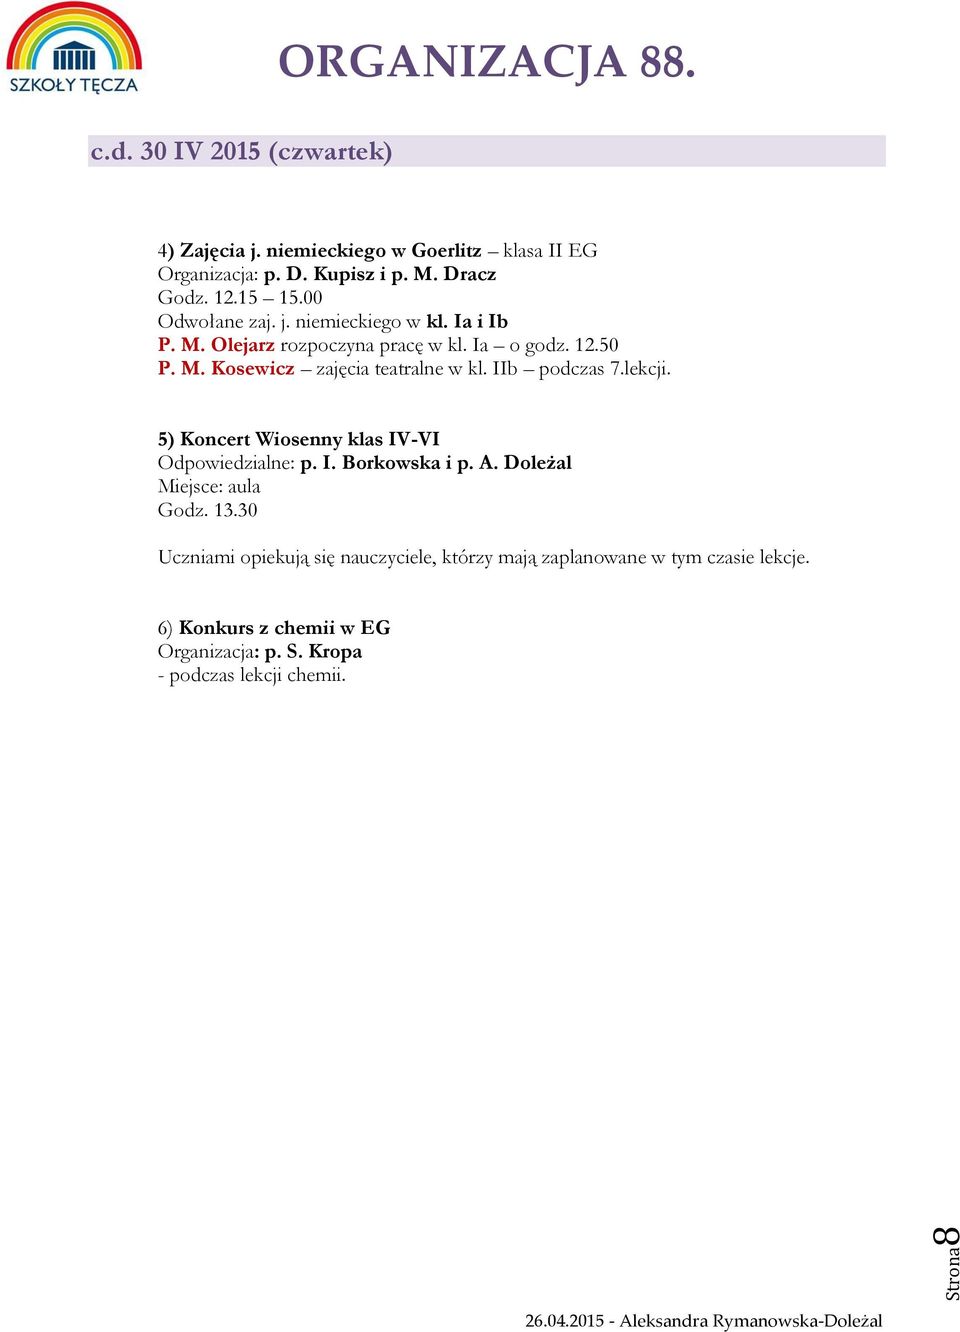 IIb podczas 7.lekcji. 5) Koncert Wiosenny klas IV-VI Odpowiedzialne: p. I. Borkowska i p. A. Doleżal Miejsce: aula Godz. 13.